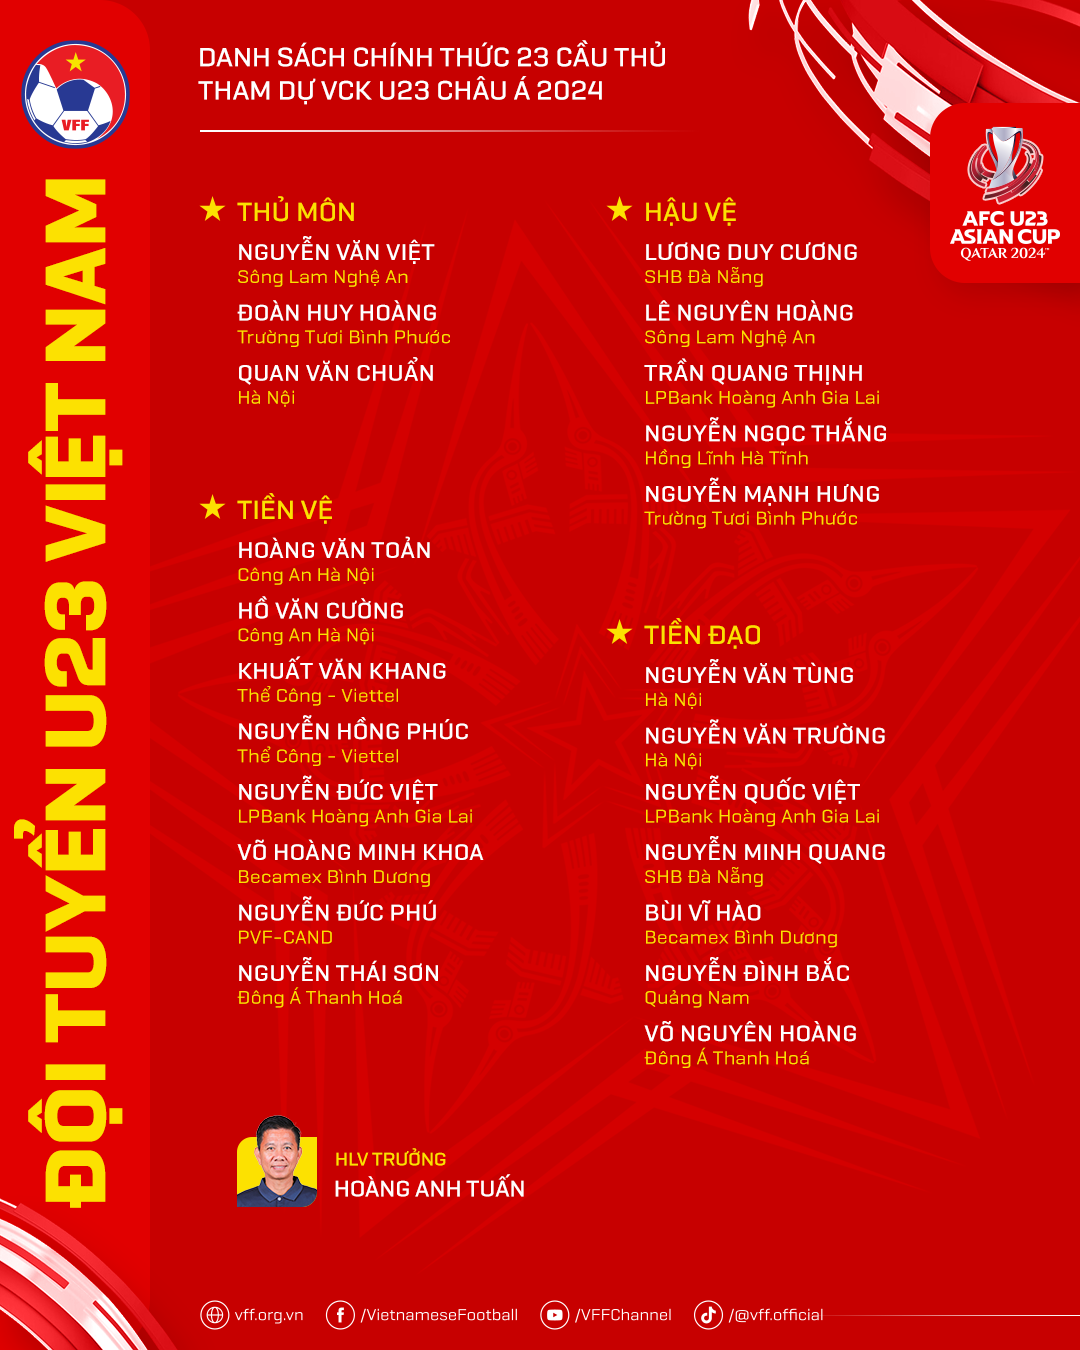 HLV Hoàng Anh Tuấn chốt danh sách 23 cầu thủ tham dự VCK U23 châu Á 2024- Ảnh 2.